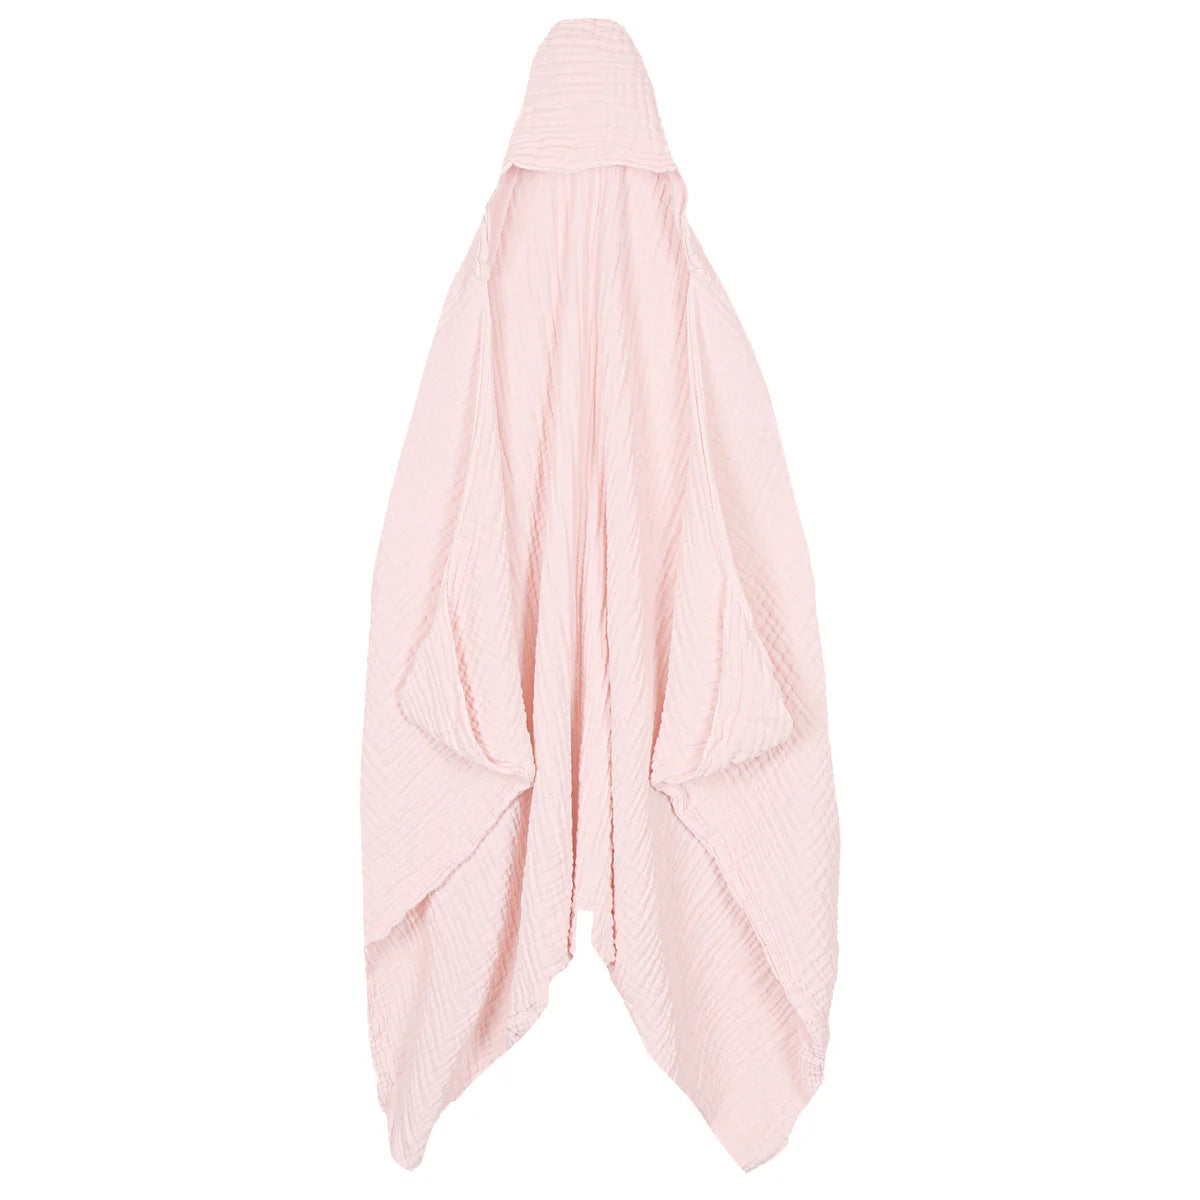 Hooded Bath Towel - Blush